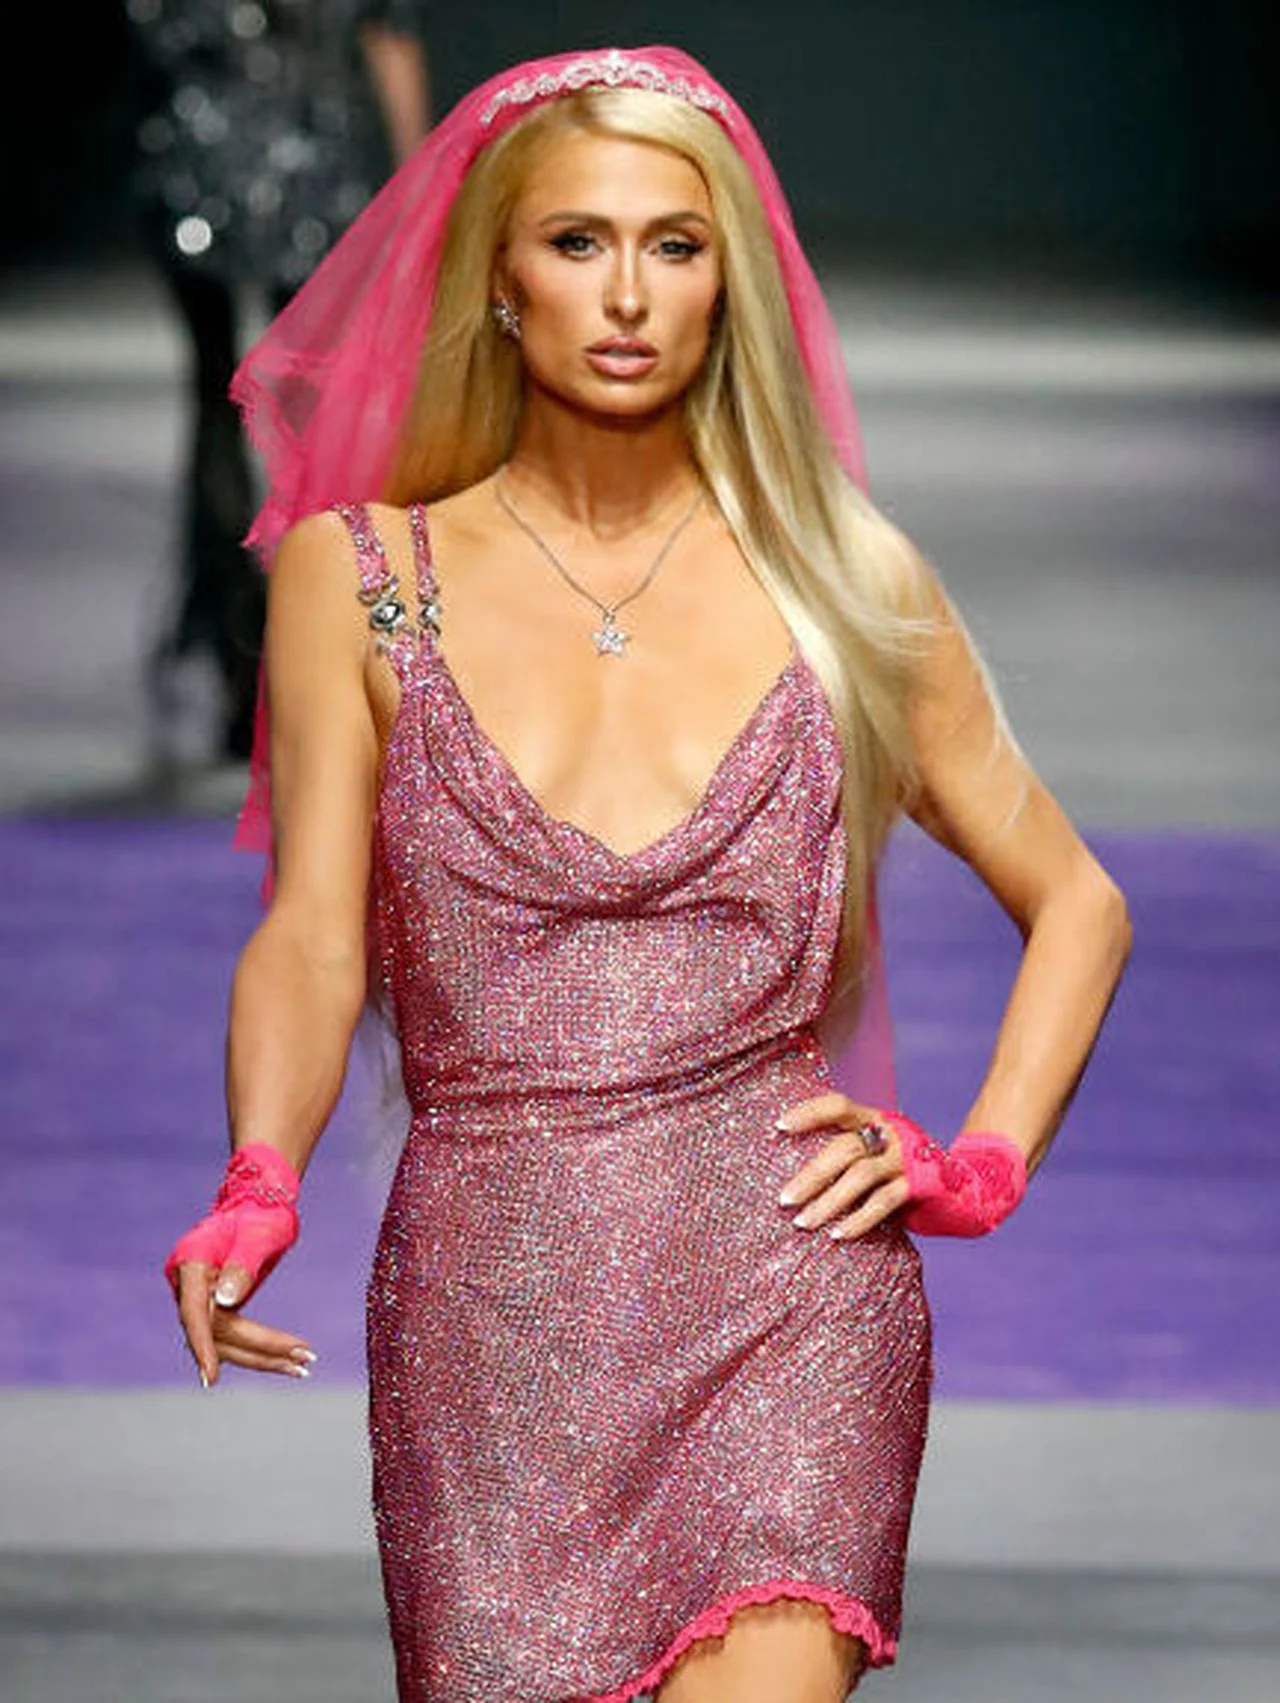 ピンク一色の花嫁スタイルに身を包んだパリス・ヒルトン、ヴェルサーチェのショーでフィナーレを飾り会場を沸かせる